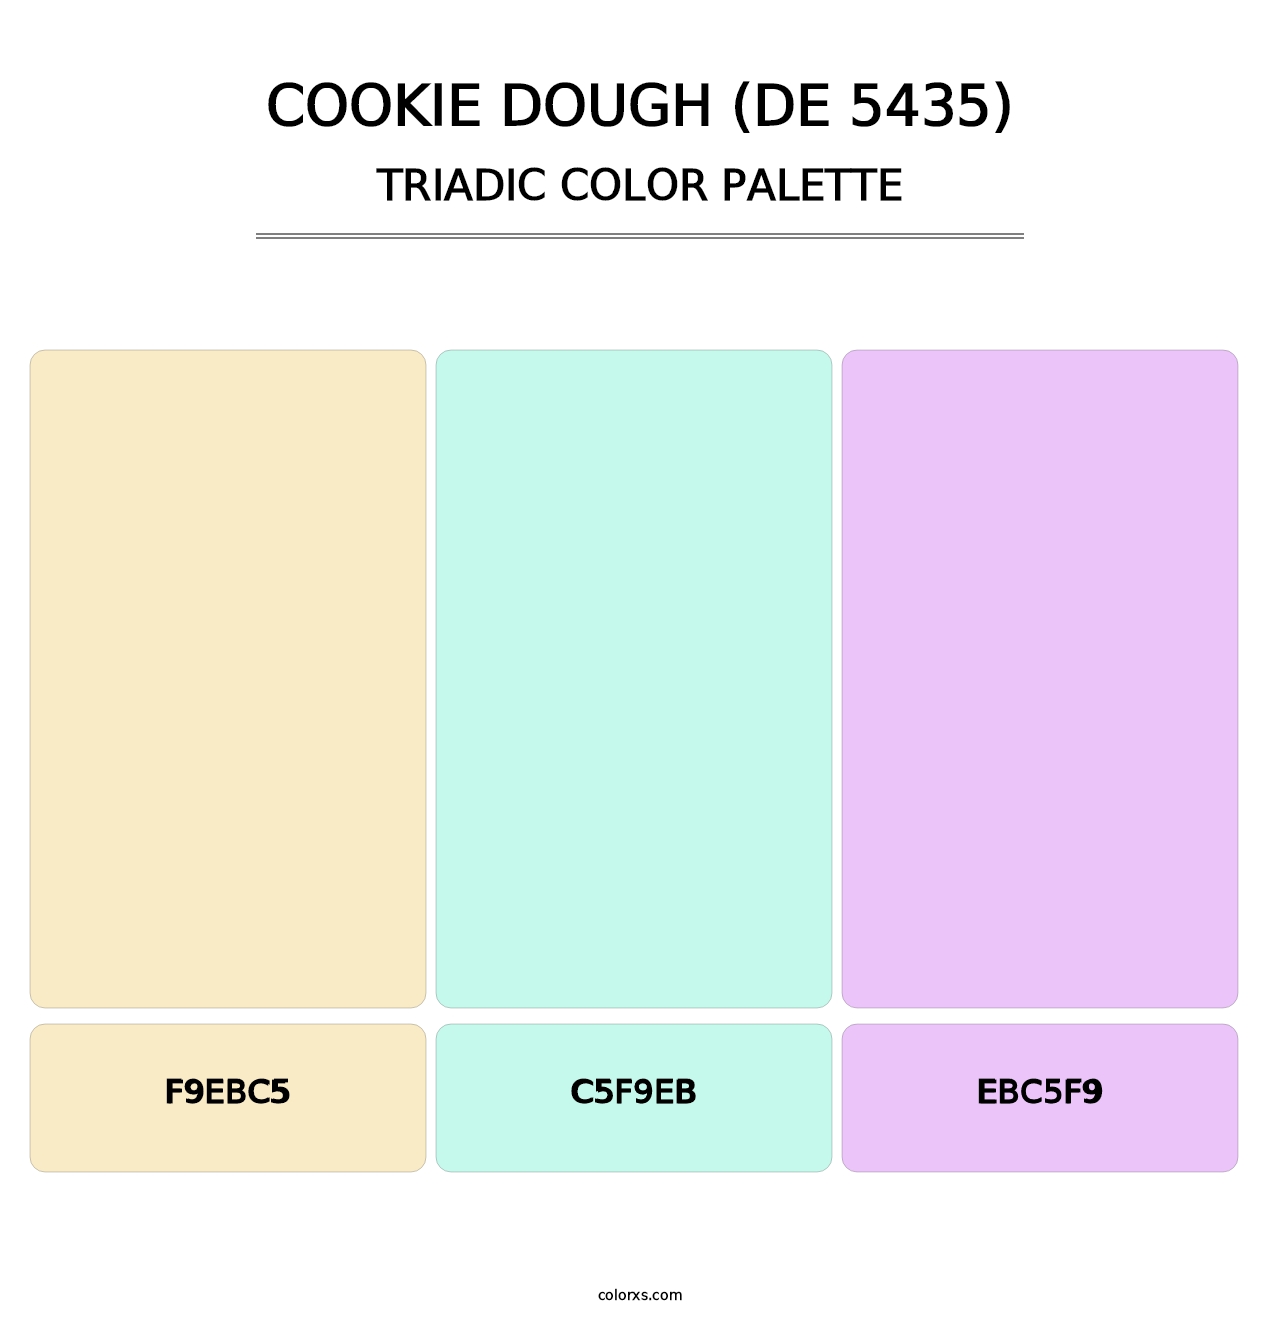 Cookie Dough (DE 5435) - Triadic Color Palette